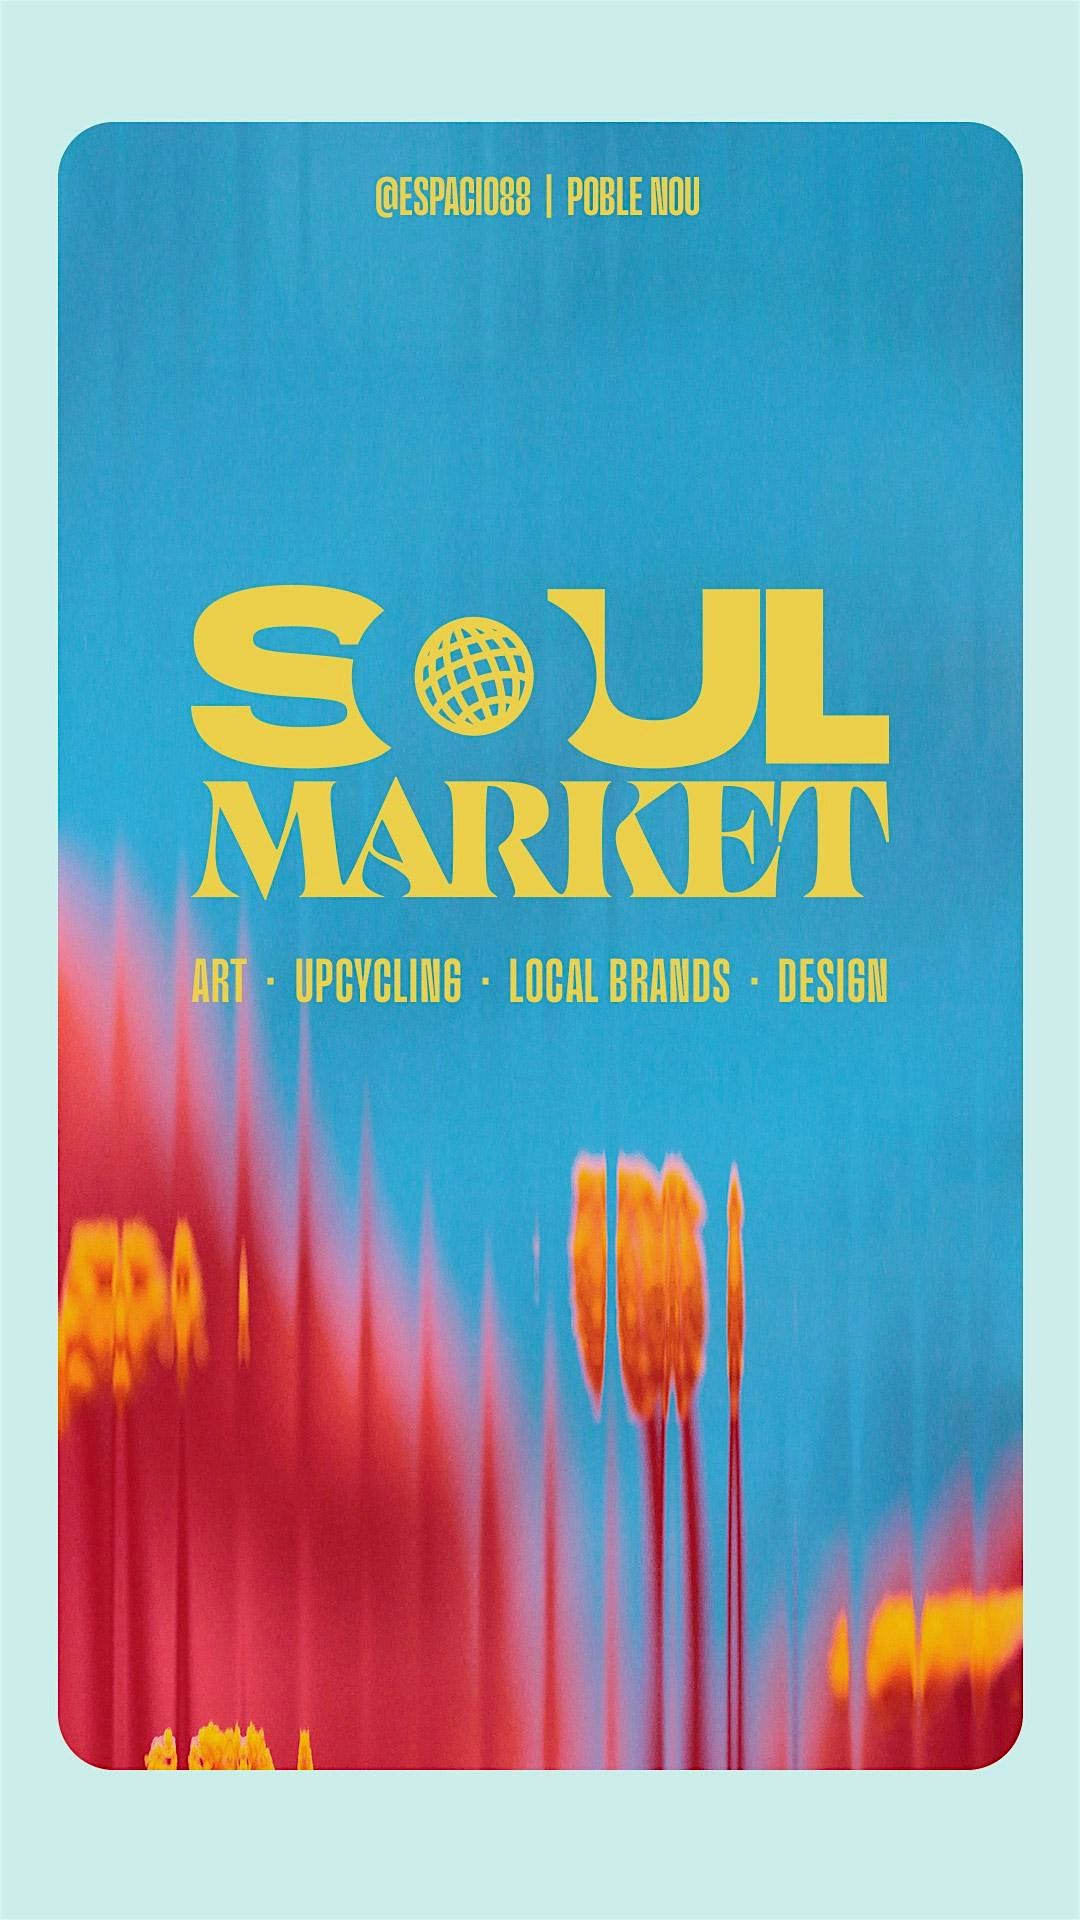 Soul Market @ESPACIO 88